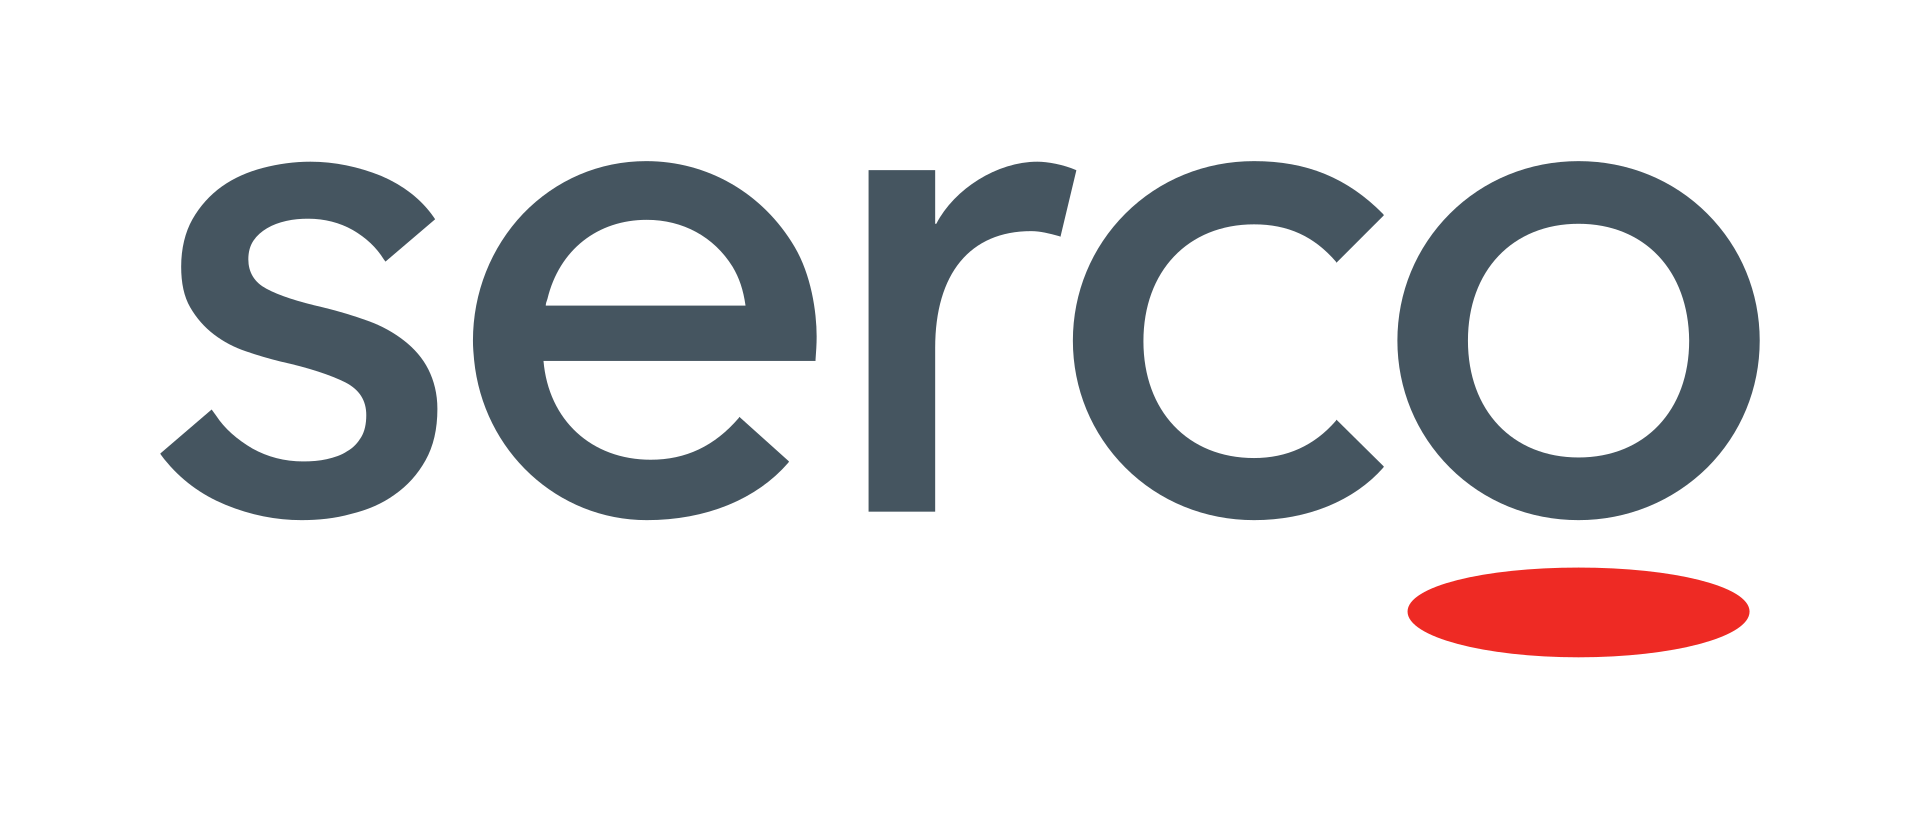 Serco Brand Value & Company Profile Brandirectory